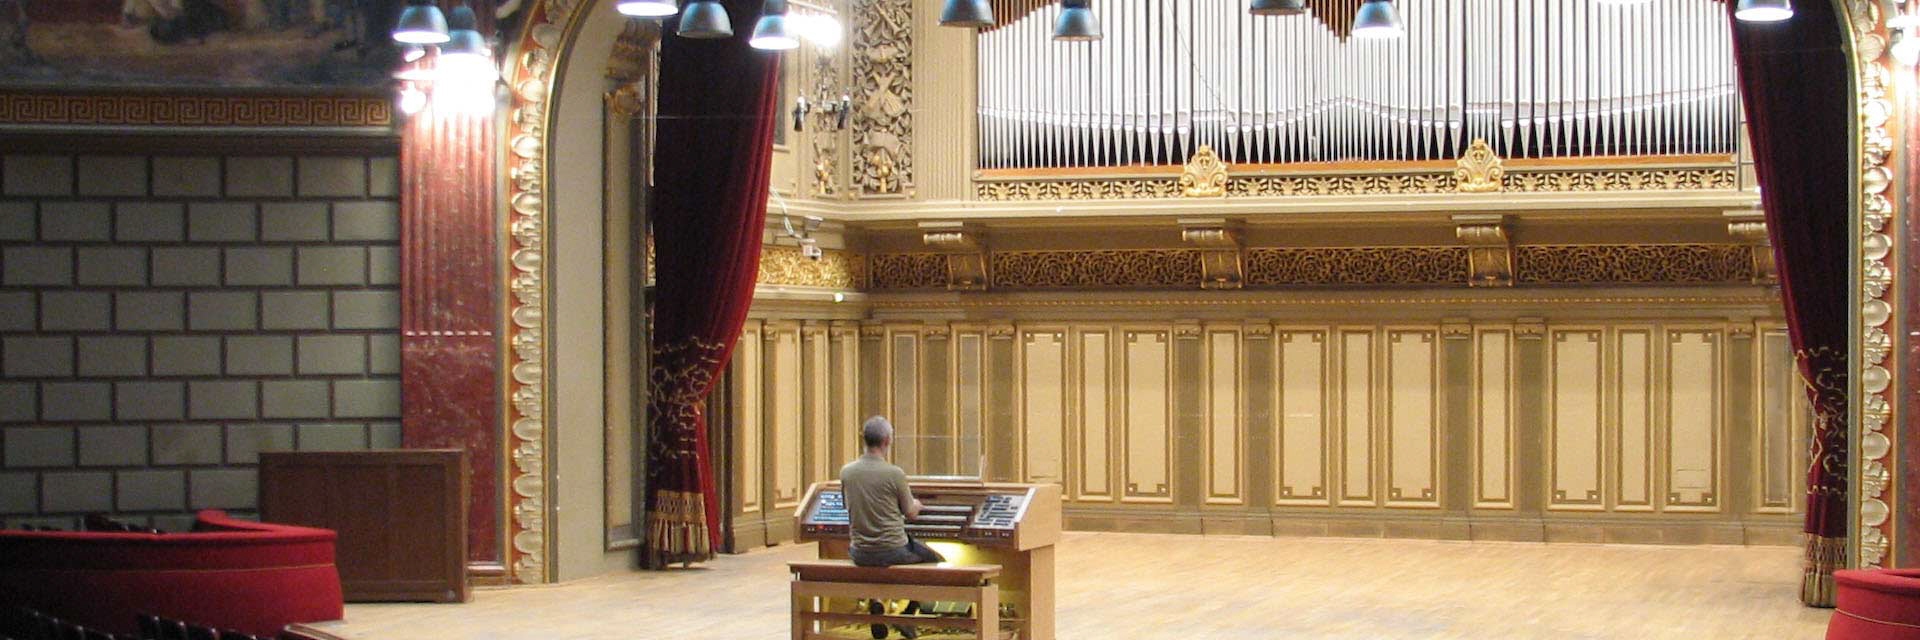 Bukarest Athenum Walcker-Orgel von 1939